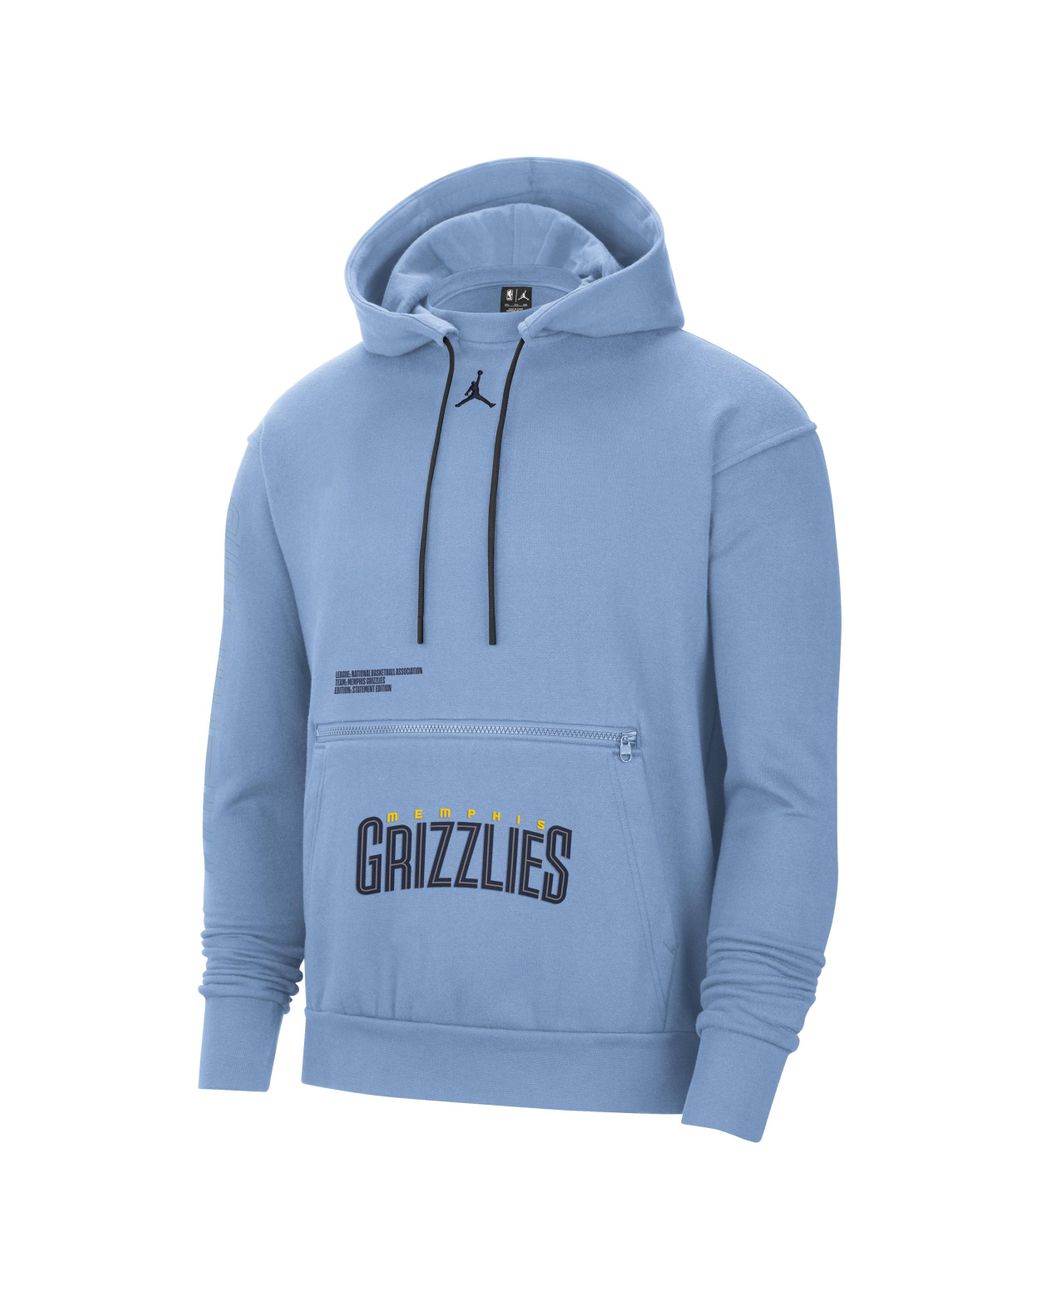 memphis grizzlies hoodie teal